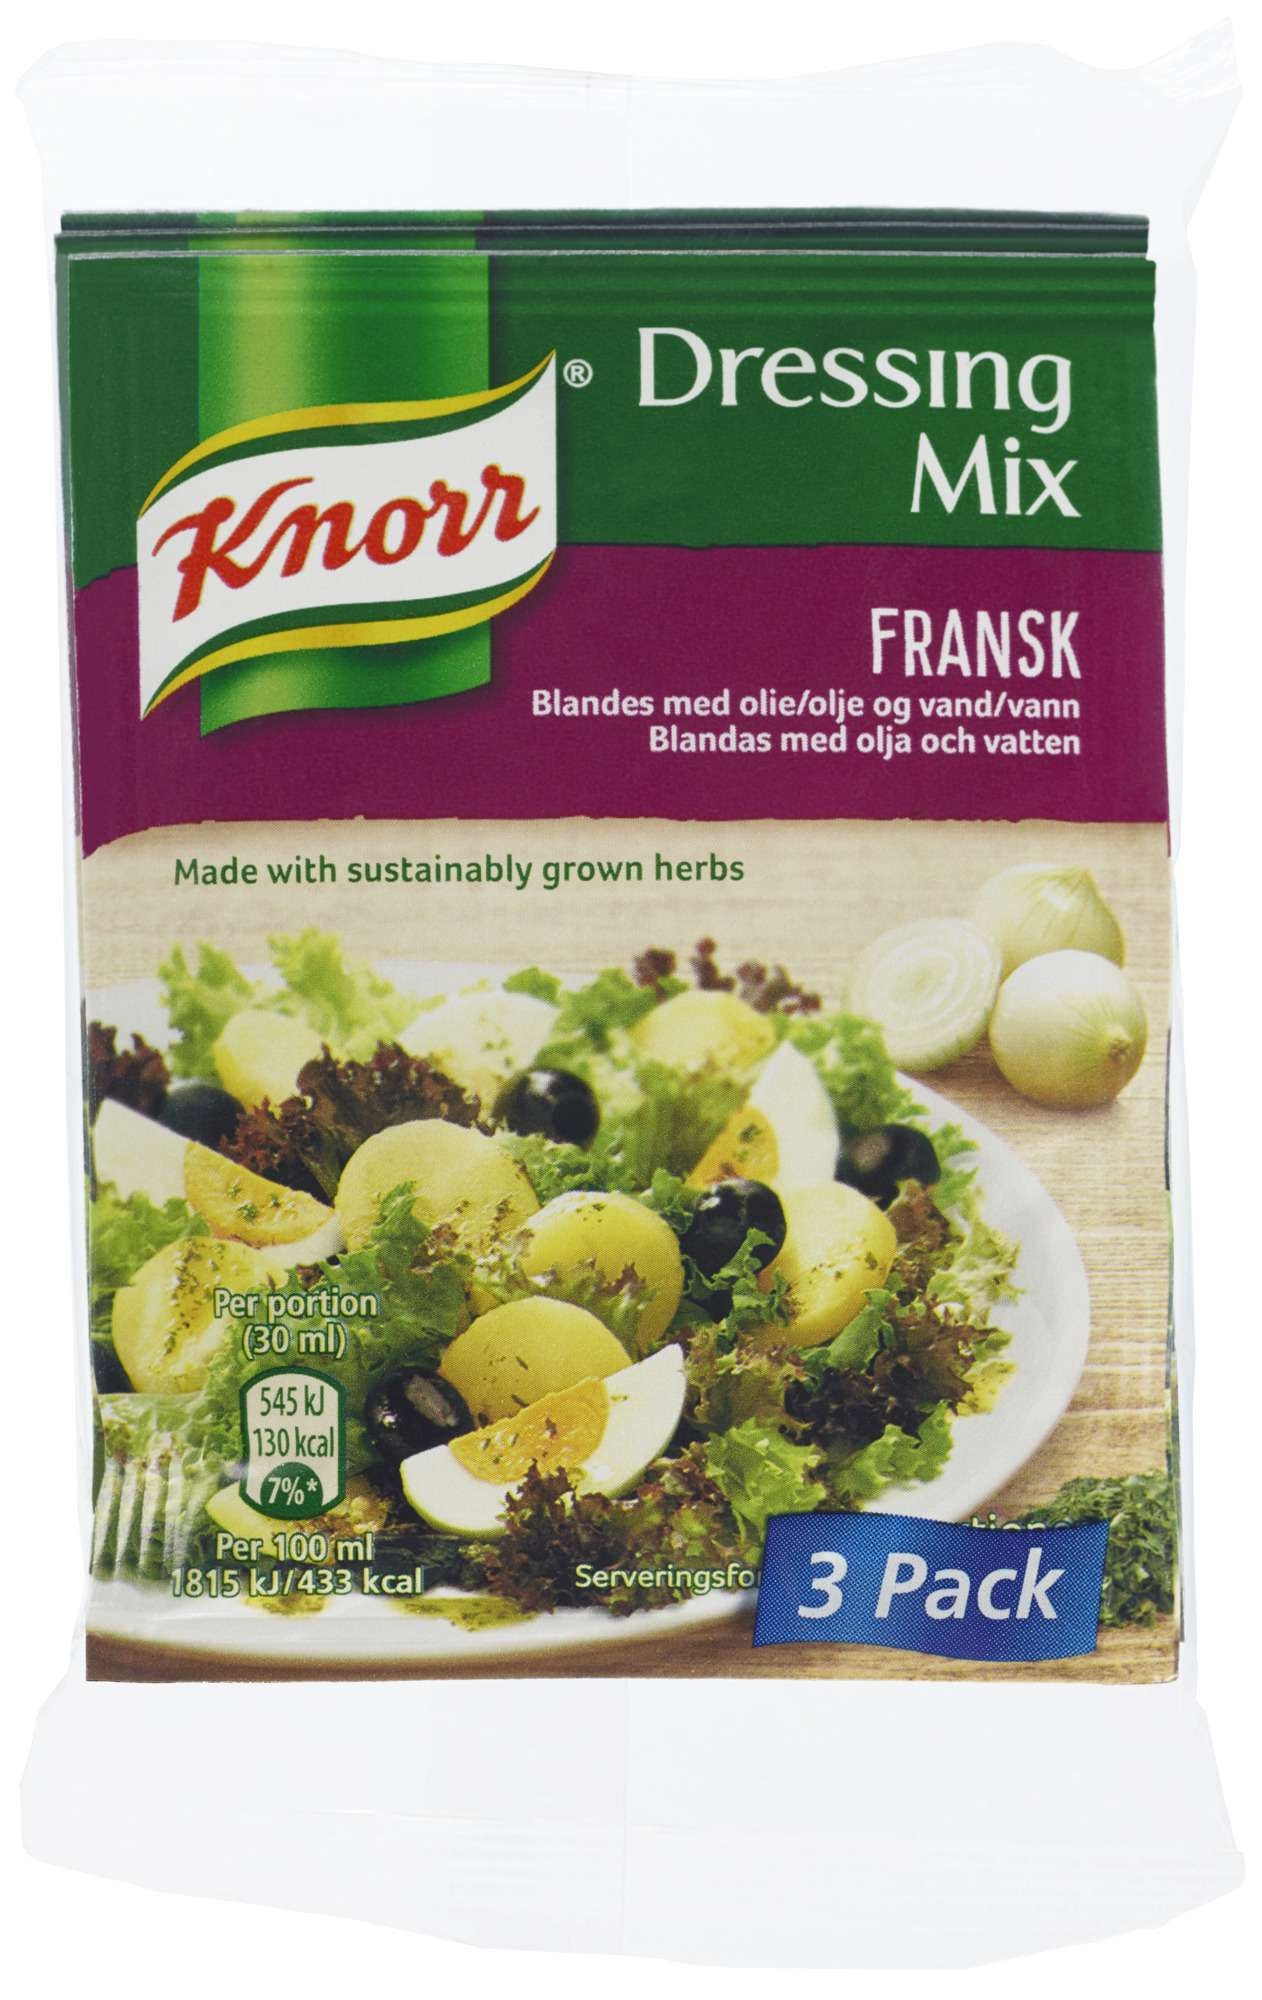 Knorr dressingmix fransk 24 gr 3-pk